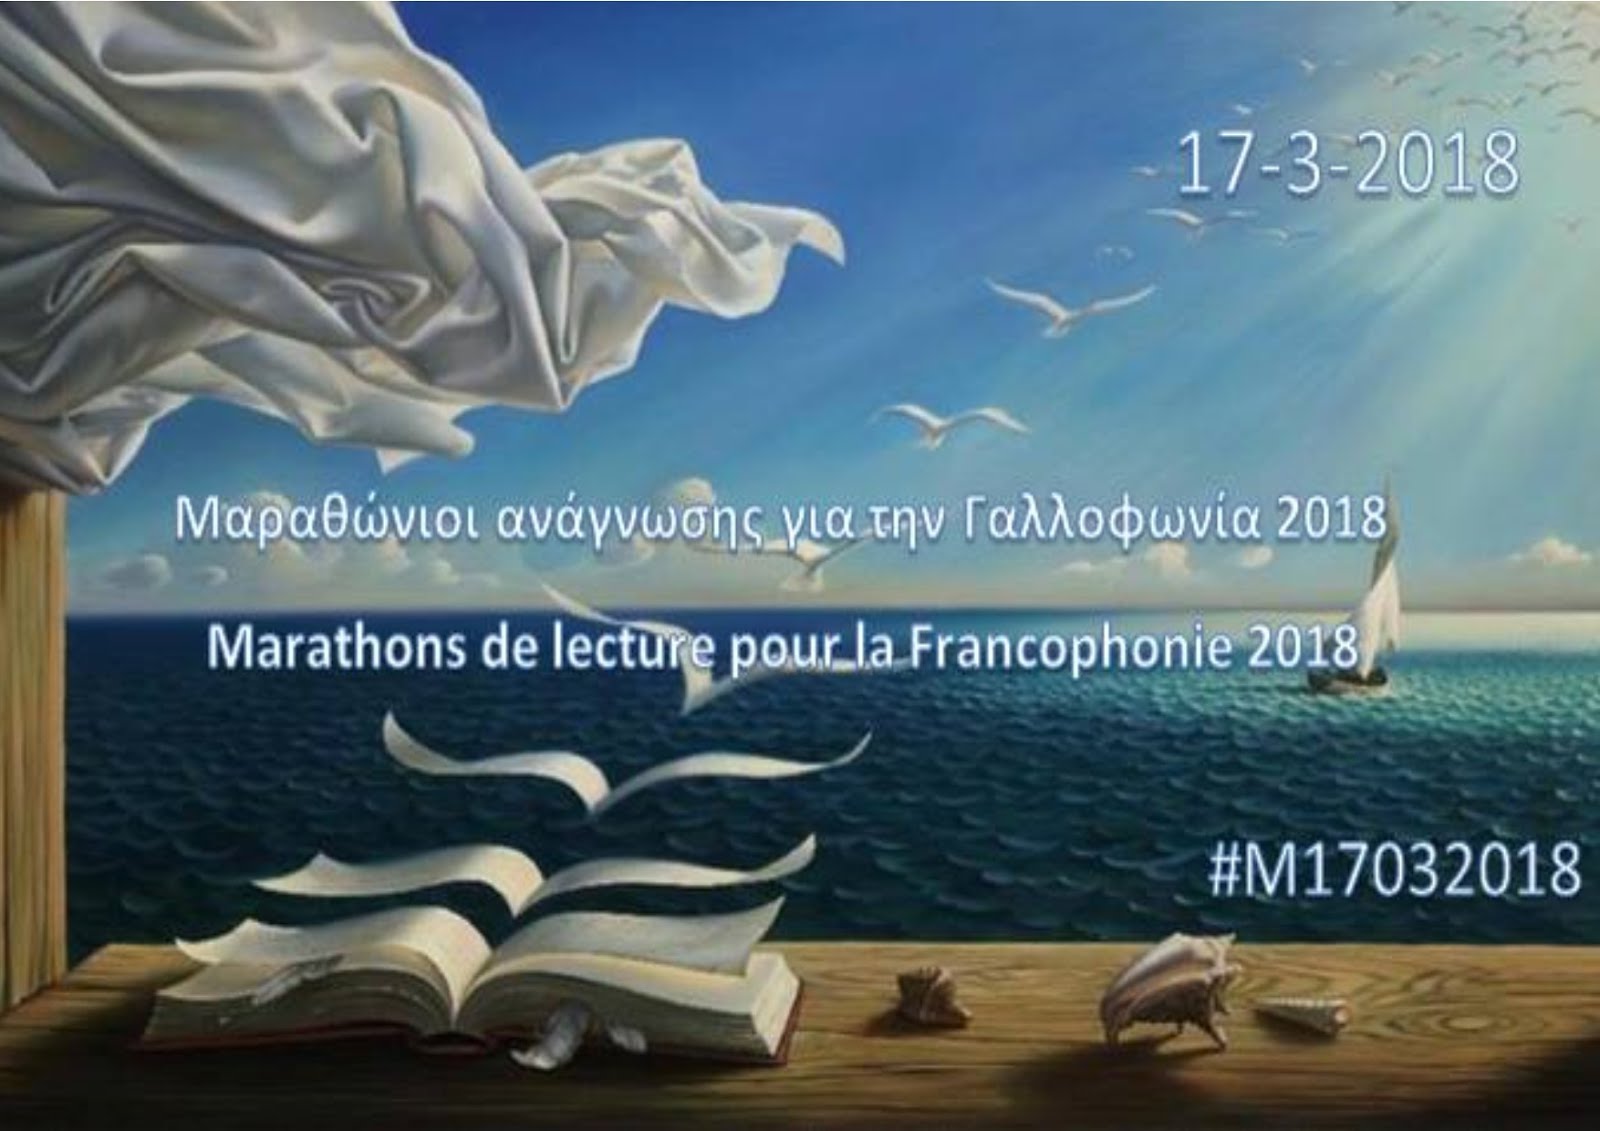 Μαραθώνιοι ανάγνωσης για τη Γαλλοφωνία 2018 - Marathons de lecture pour la Francophonie 2018